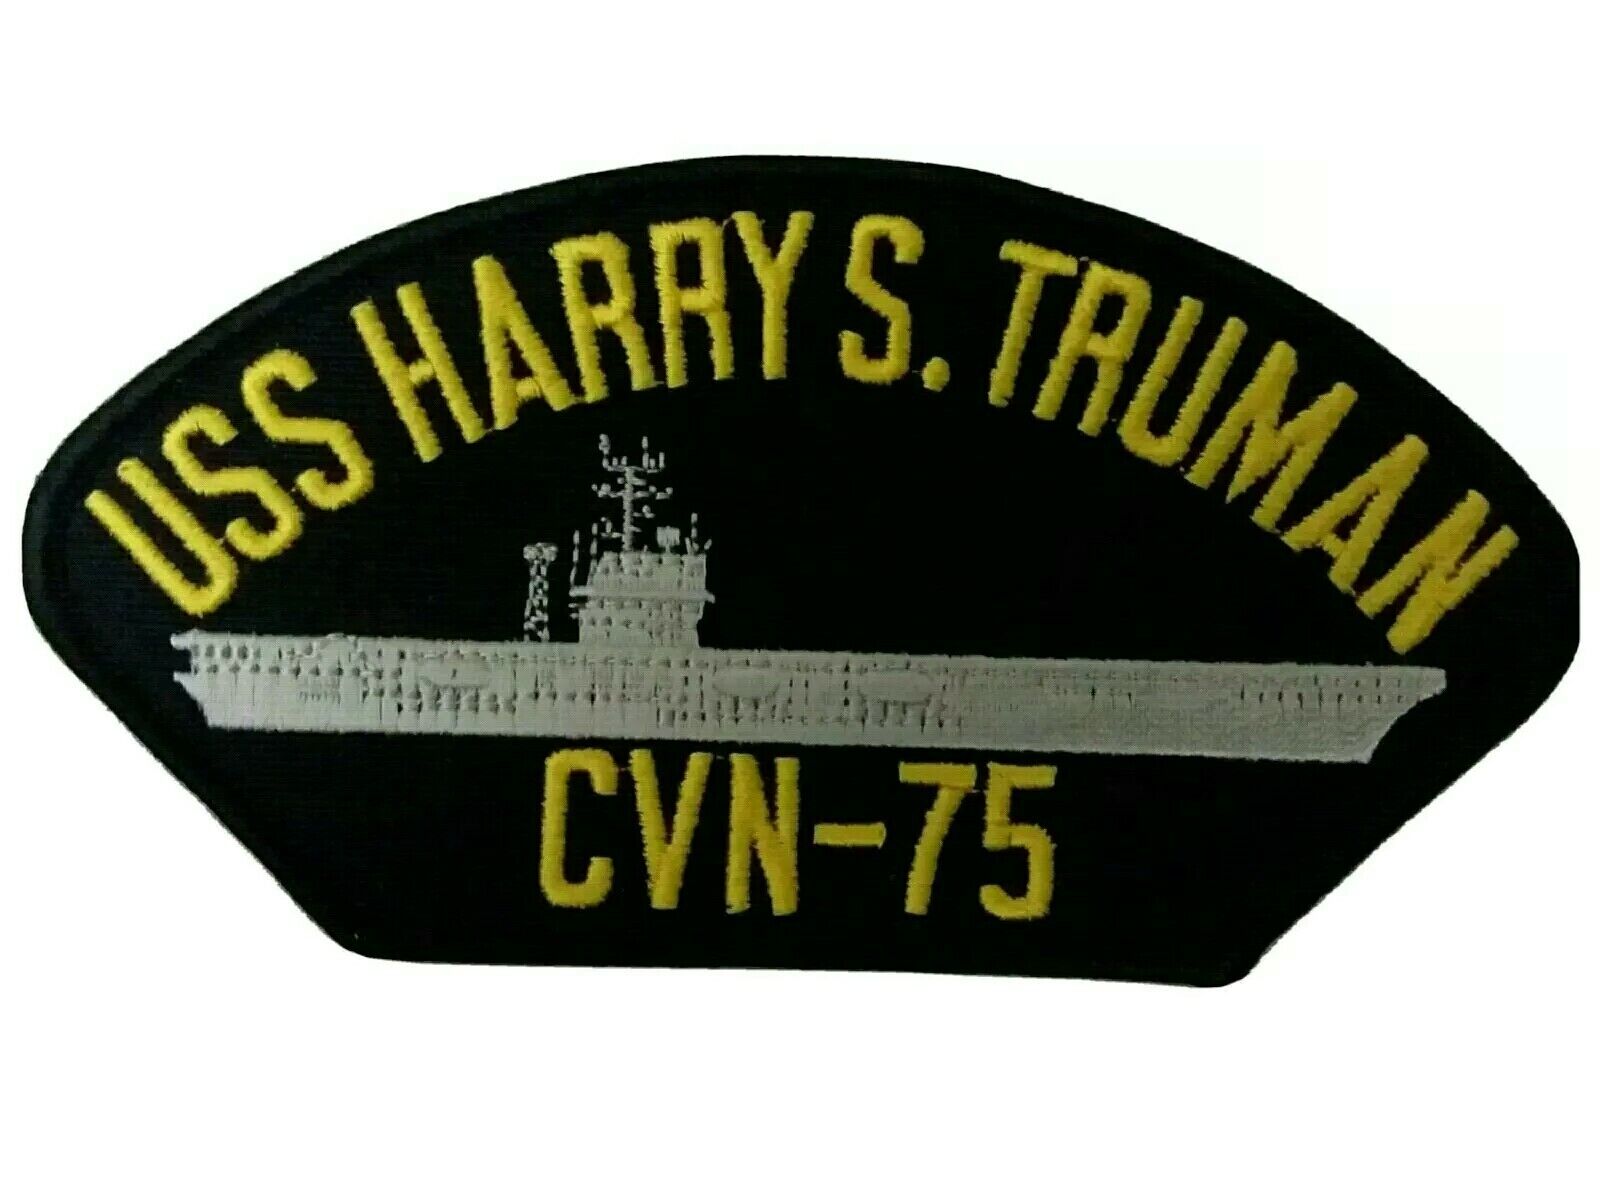 Uss Harry S. Truman (Cvn-75) Wallpapers